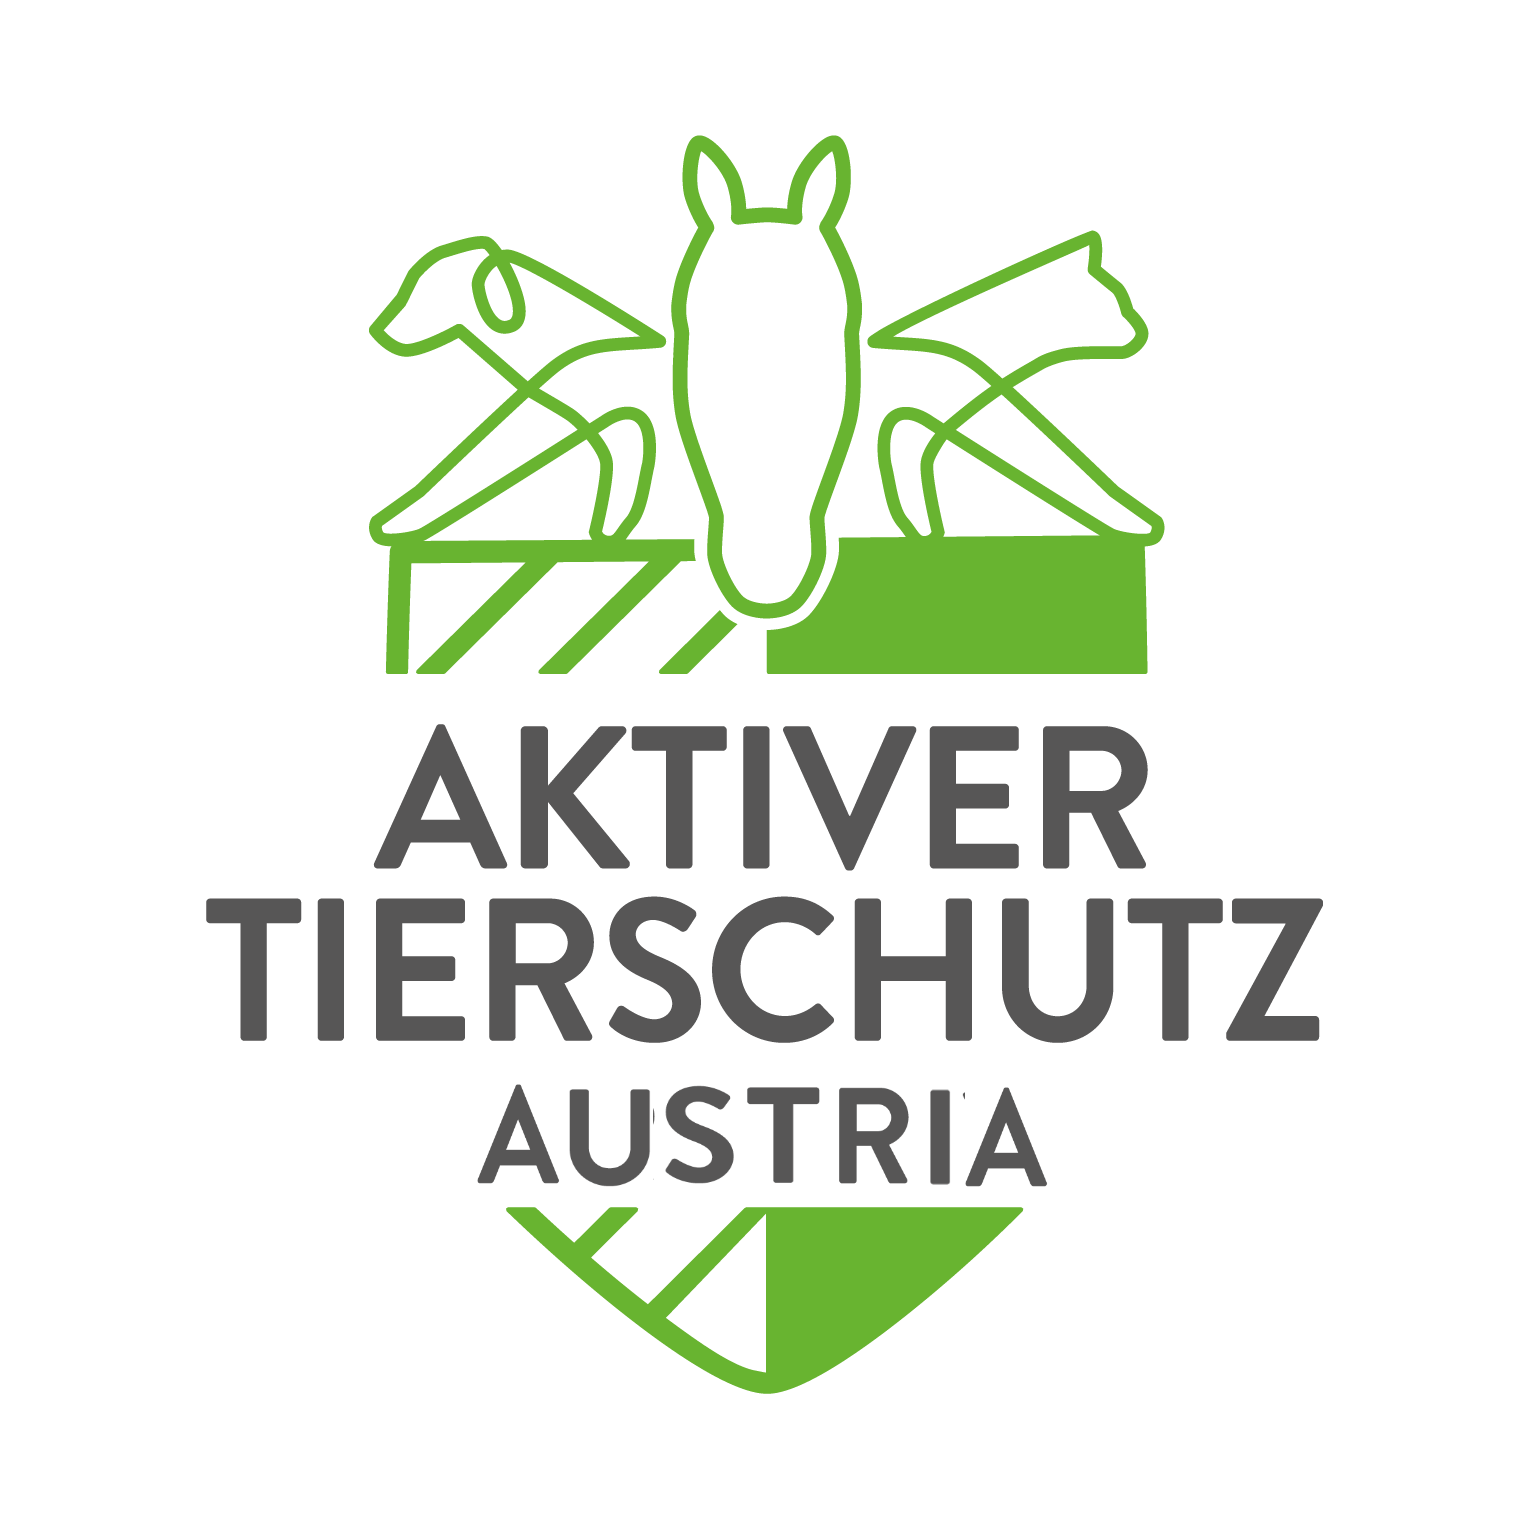 Aktiver Tierschutz Austria - Arche Noah